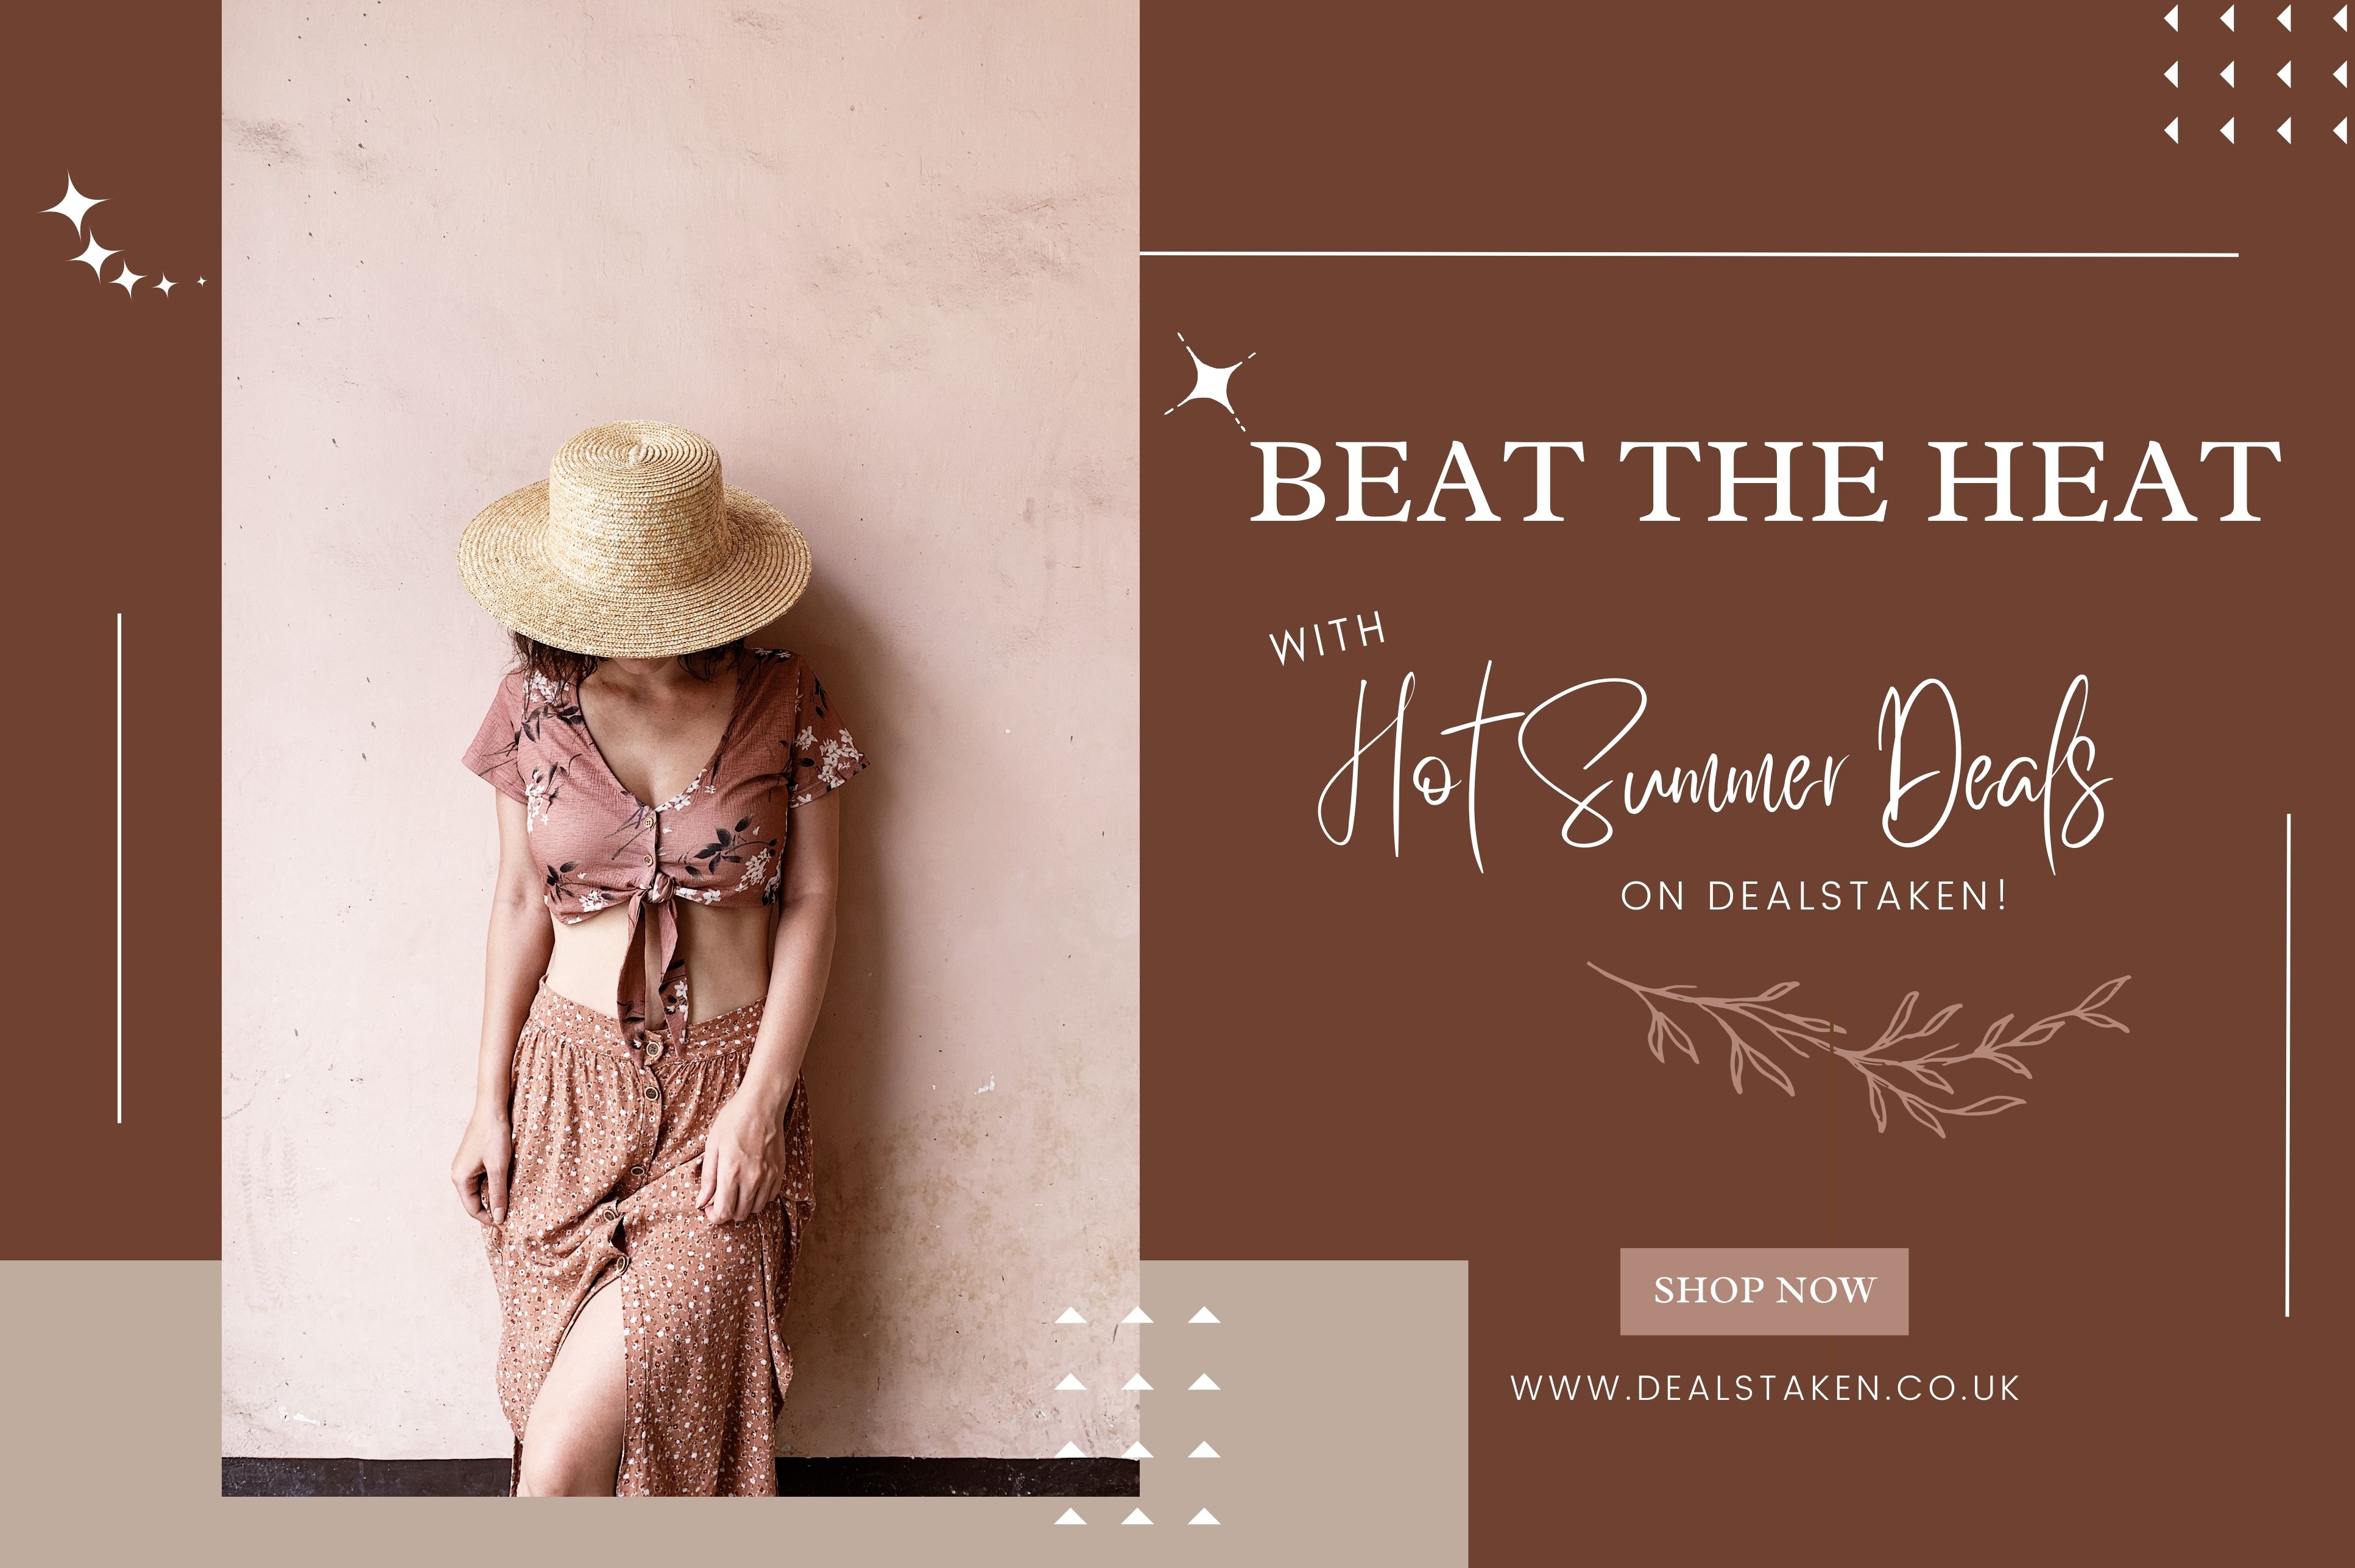 beat-the-heat-with-hot-summer-deals-on-dealstaken